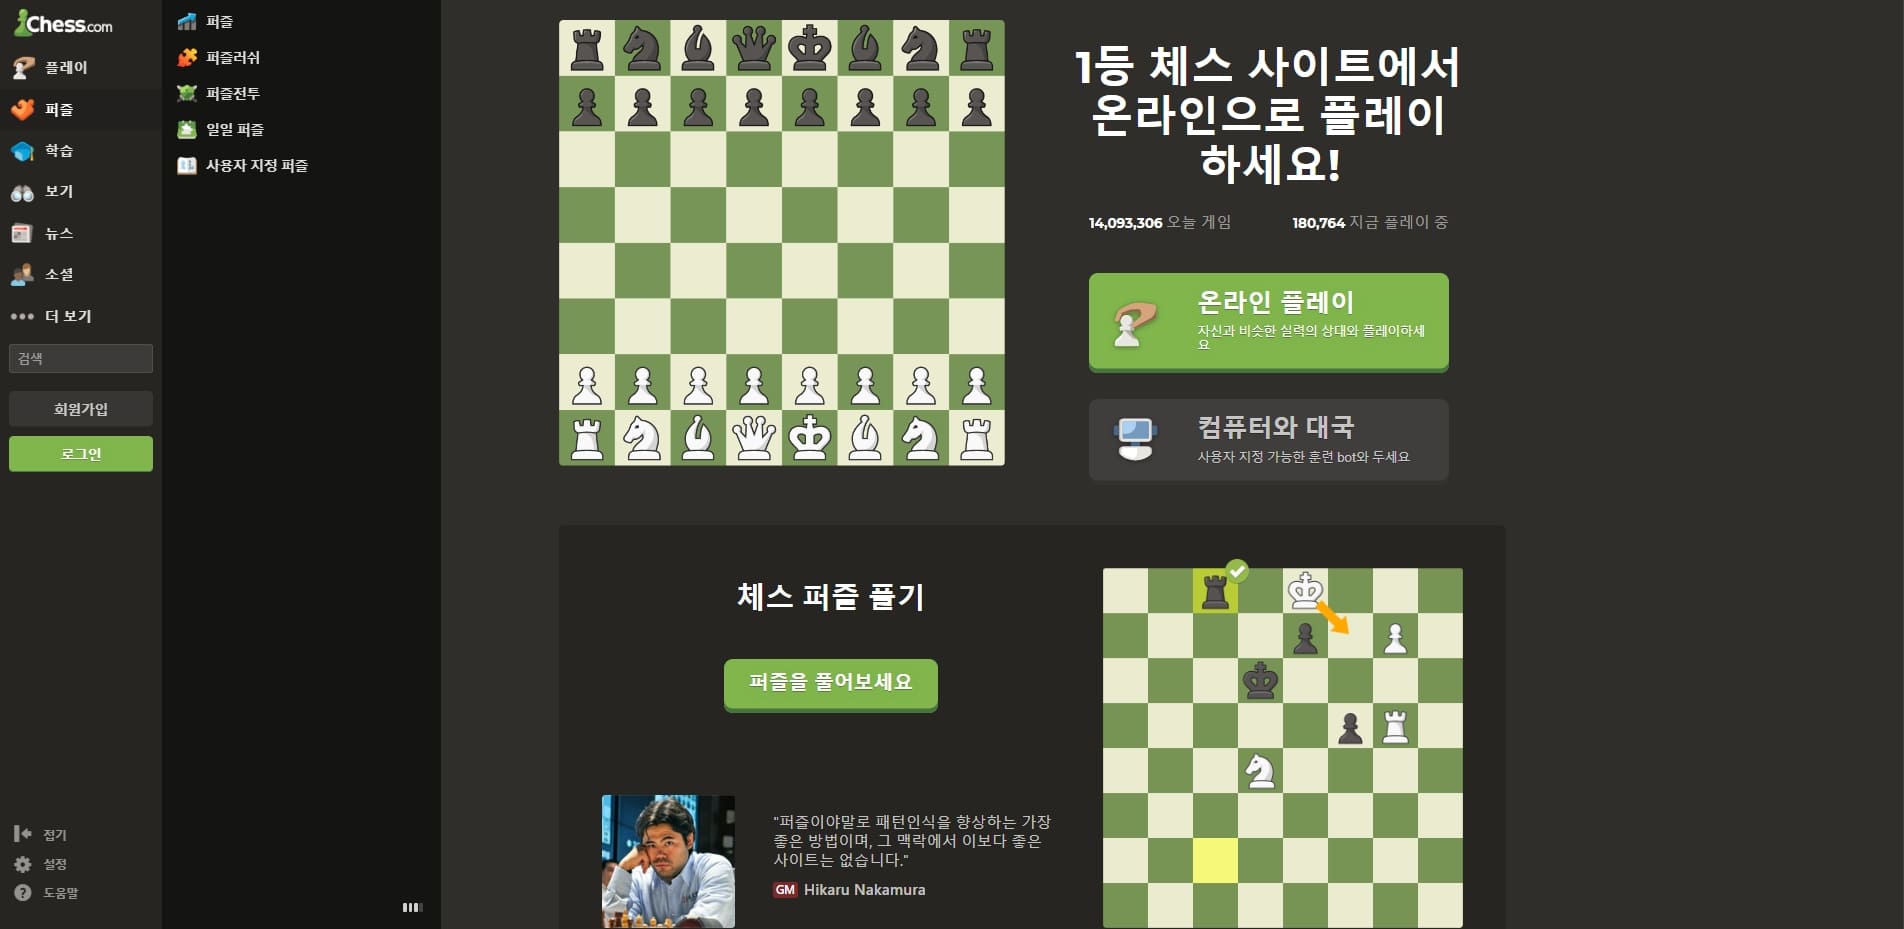 무료 체스 게임 사이트 Chess.com 홈페이지 메인화면